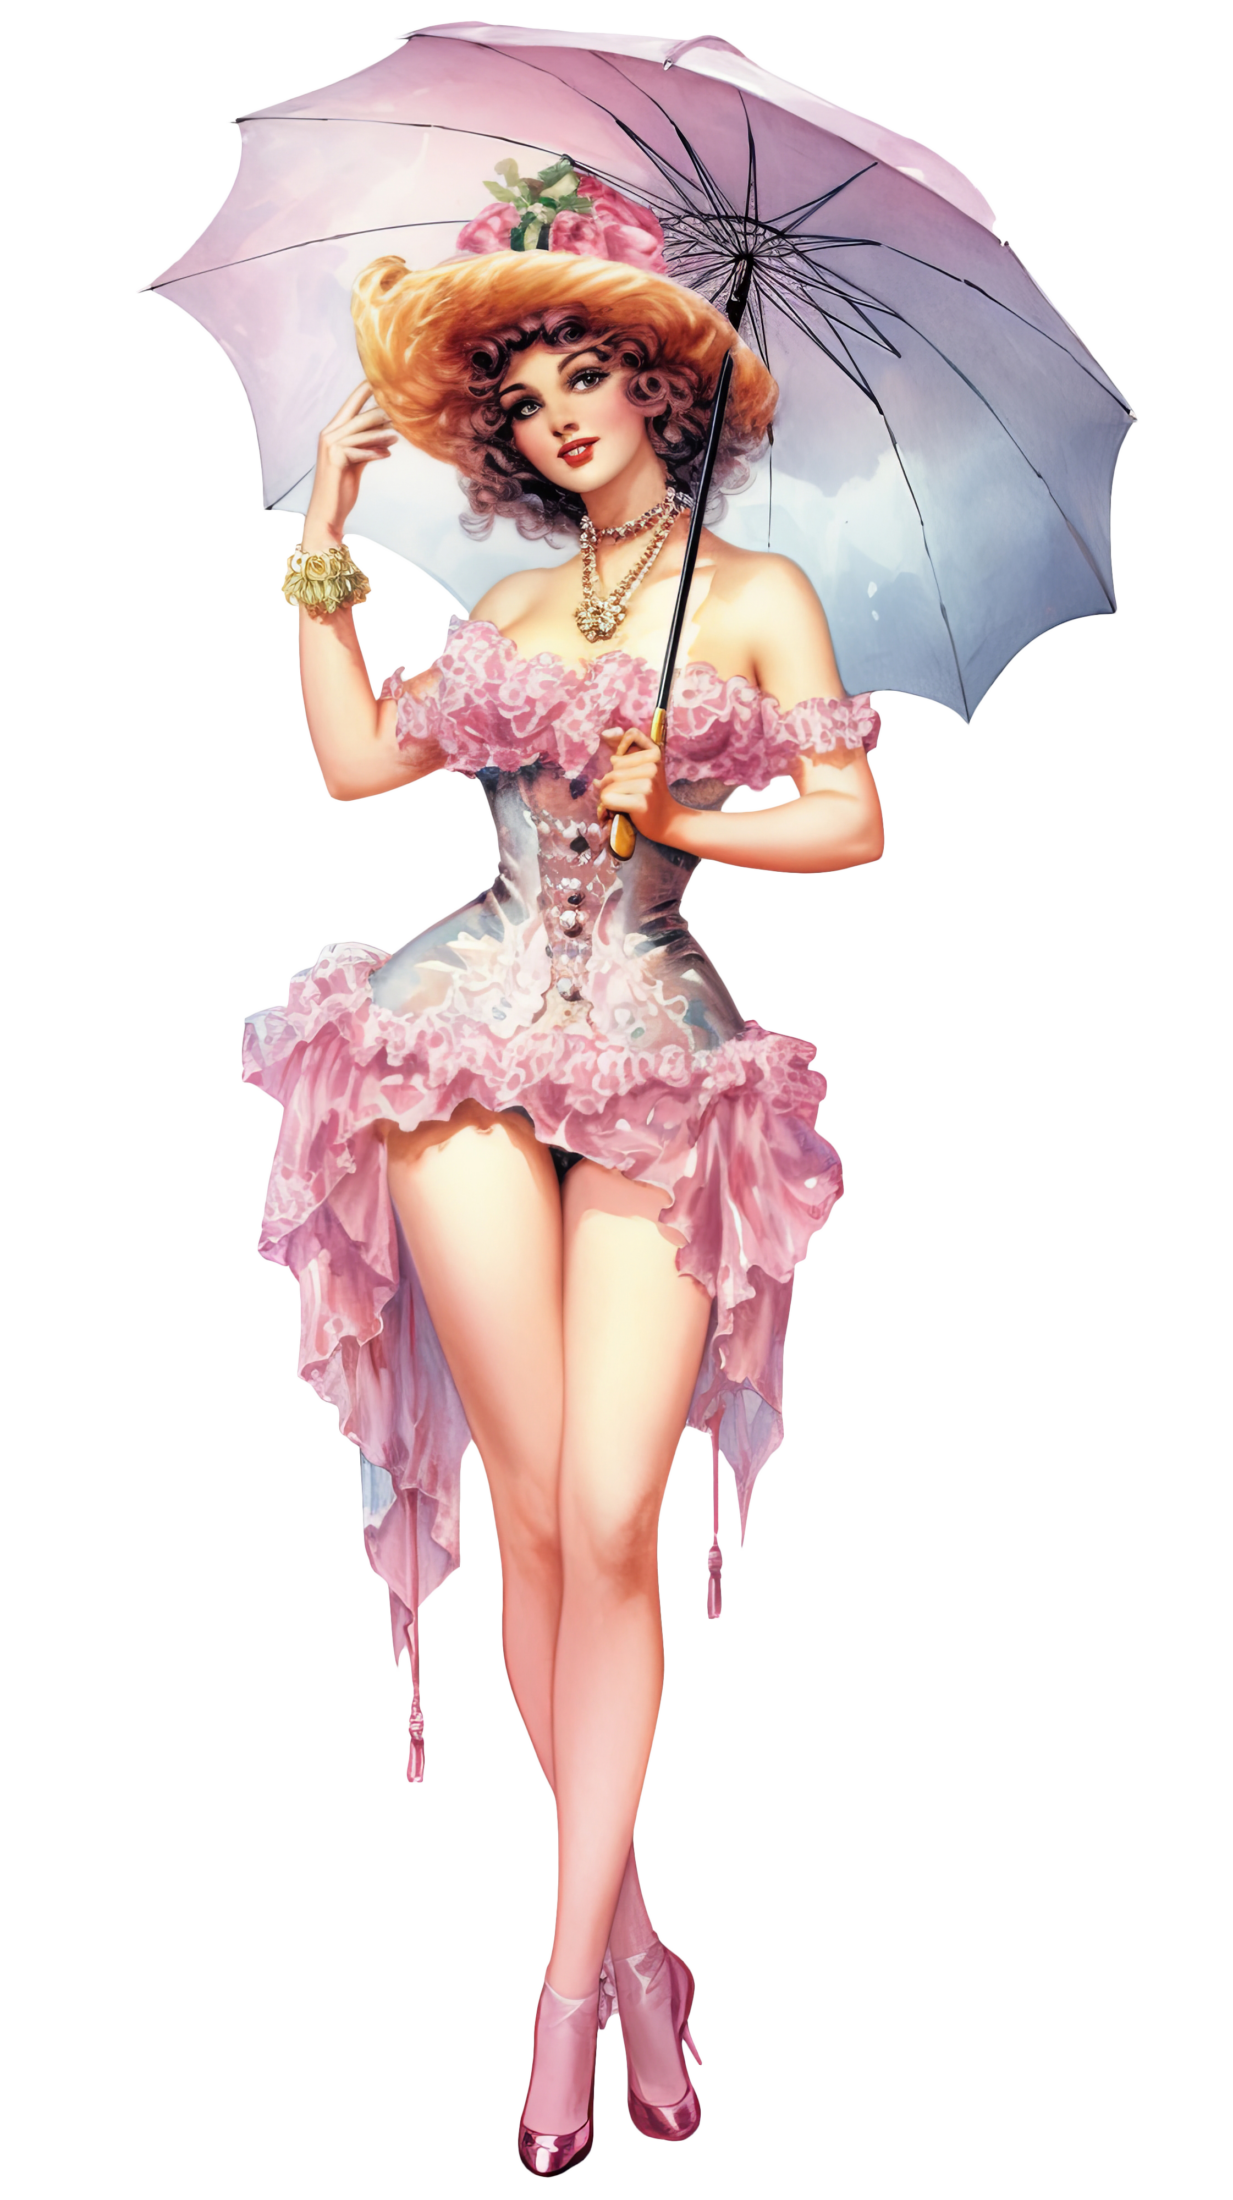 Vintage hübsche Dame im kurzen Kleid mit Schirm und Hut